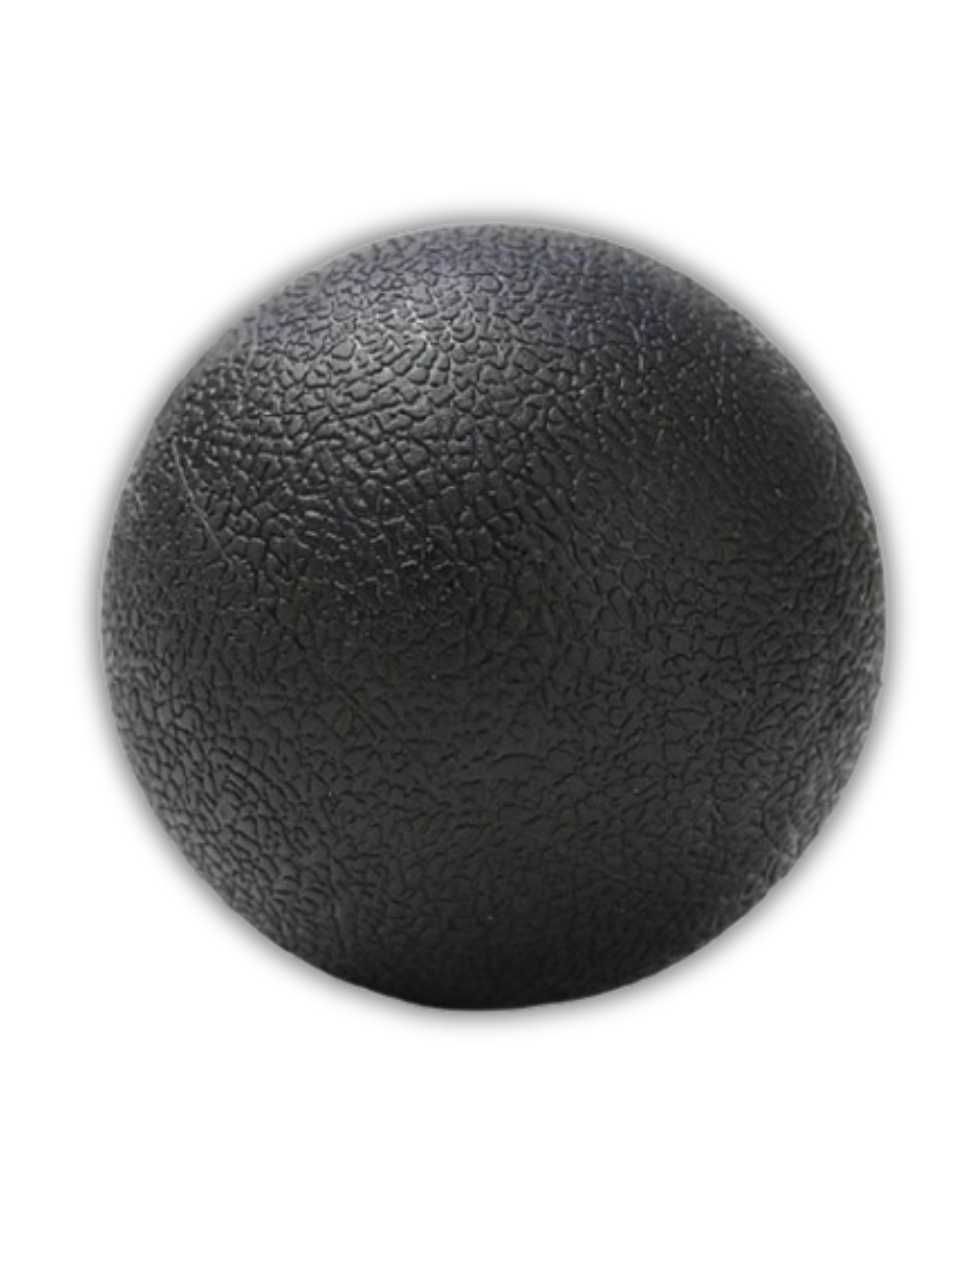 Массажный мяч для МФР и массажа 6 см. диаметр